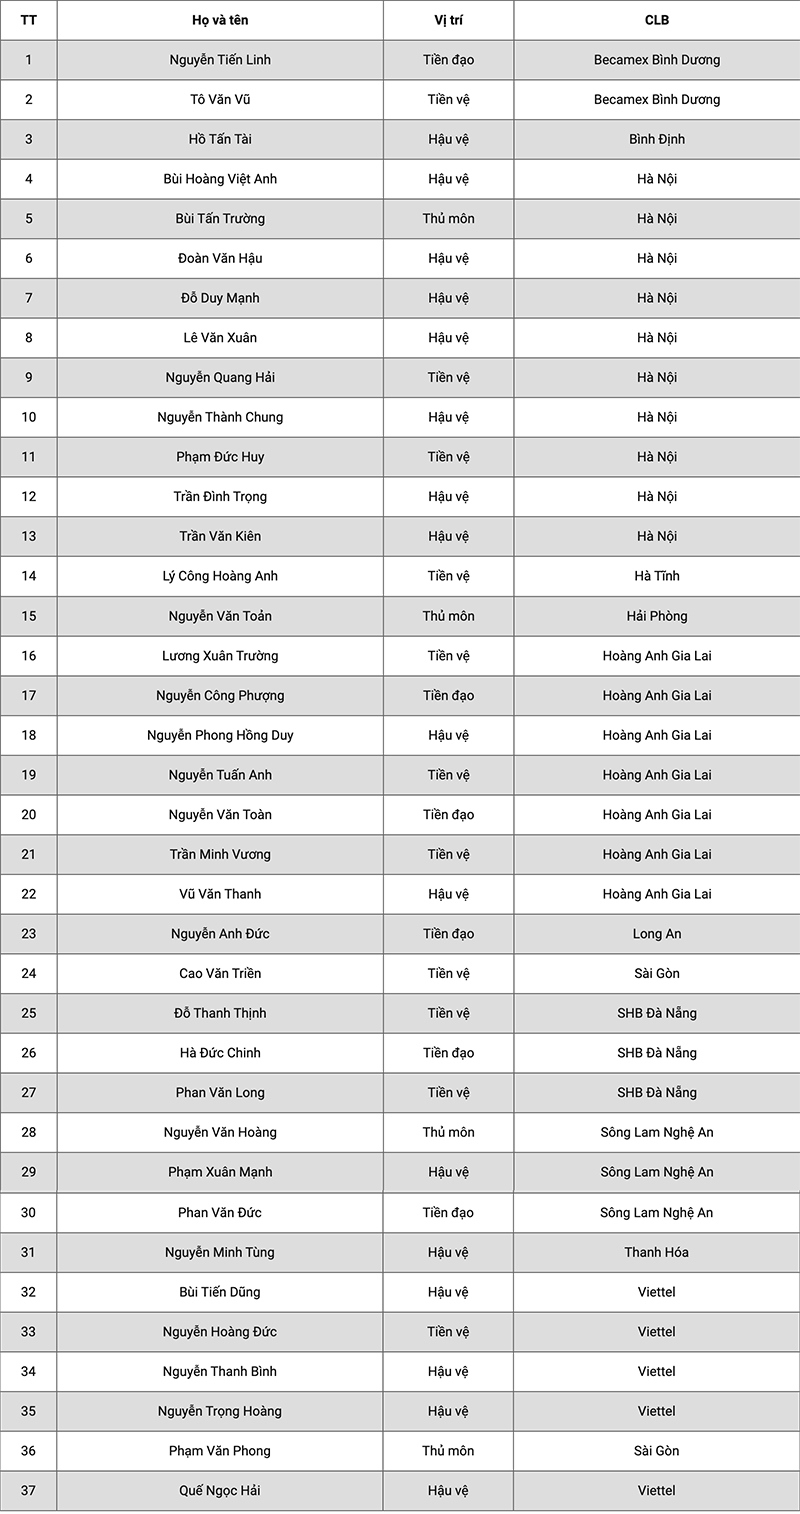 HLV Park Hang-seo chốt danh sách 37 cầu thủ ĐT Việt Nam - Ảnh 2